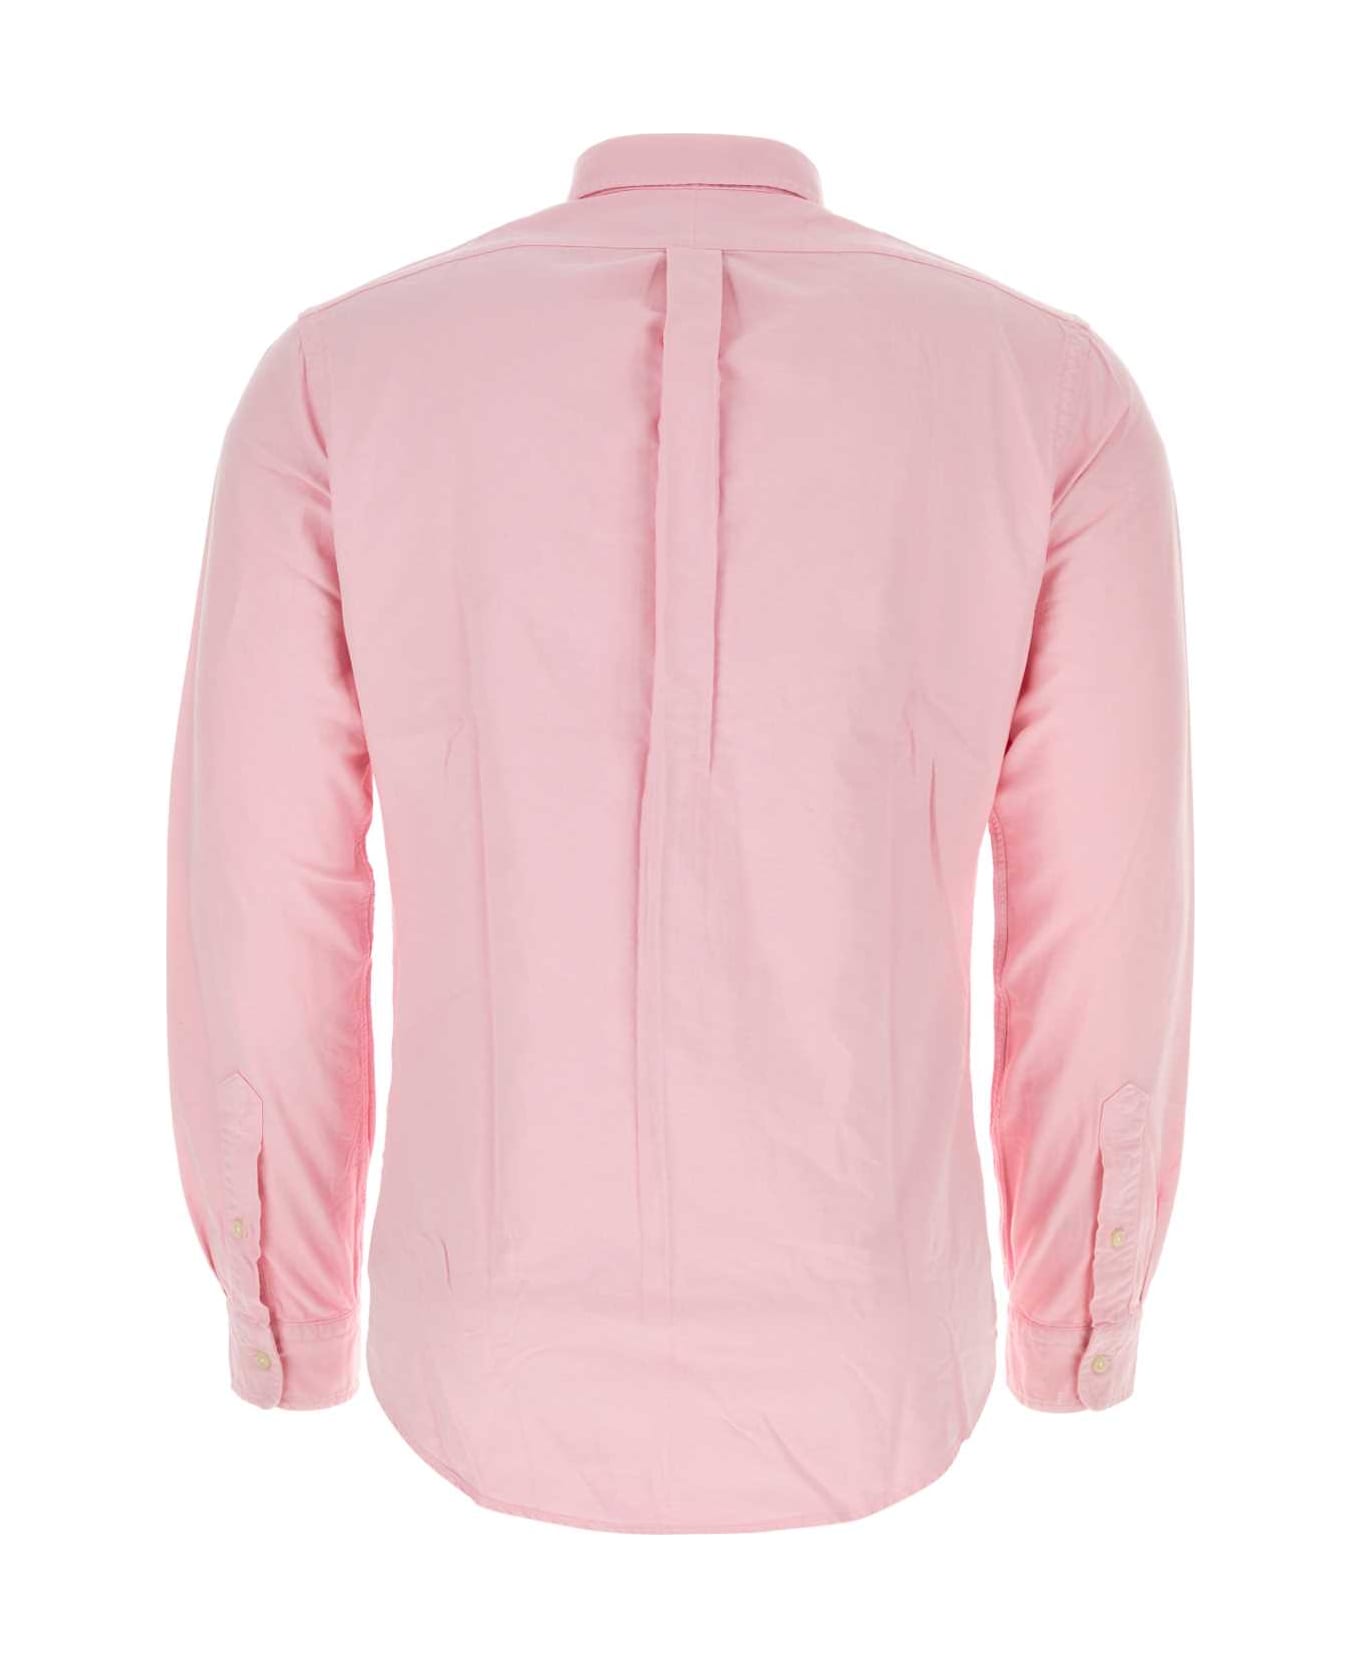 Polo Ralph Lauren Pink Oxford Shirt - PINK